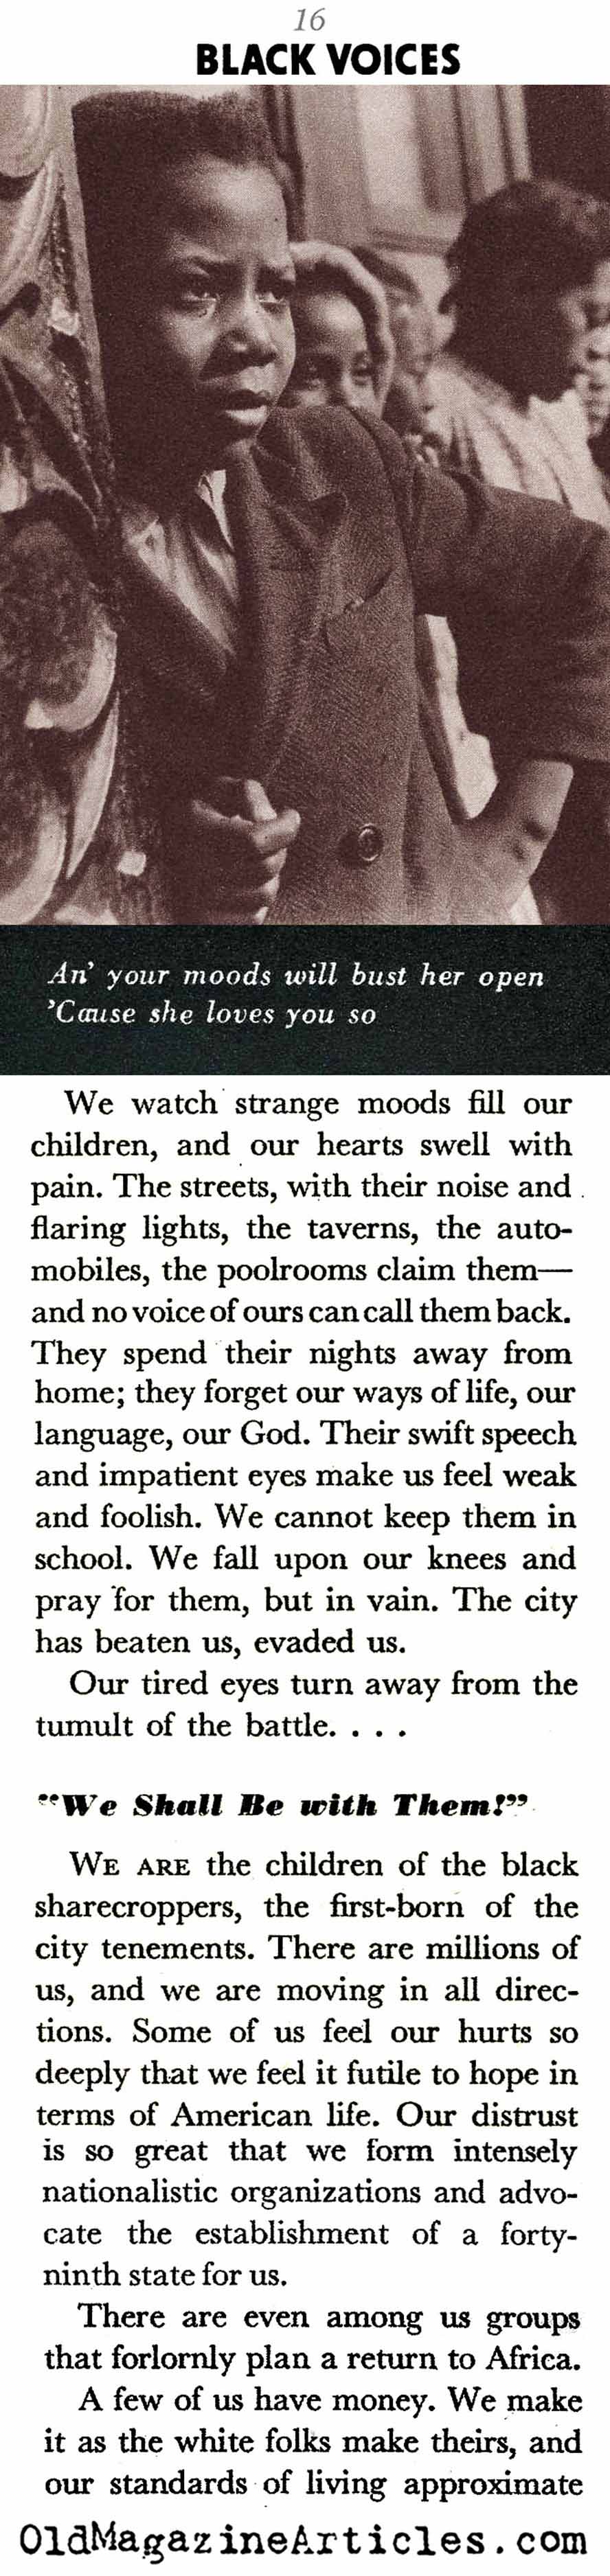 Pain and Hope (Coronet Magazine, 1942)